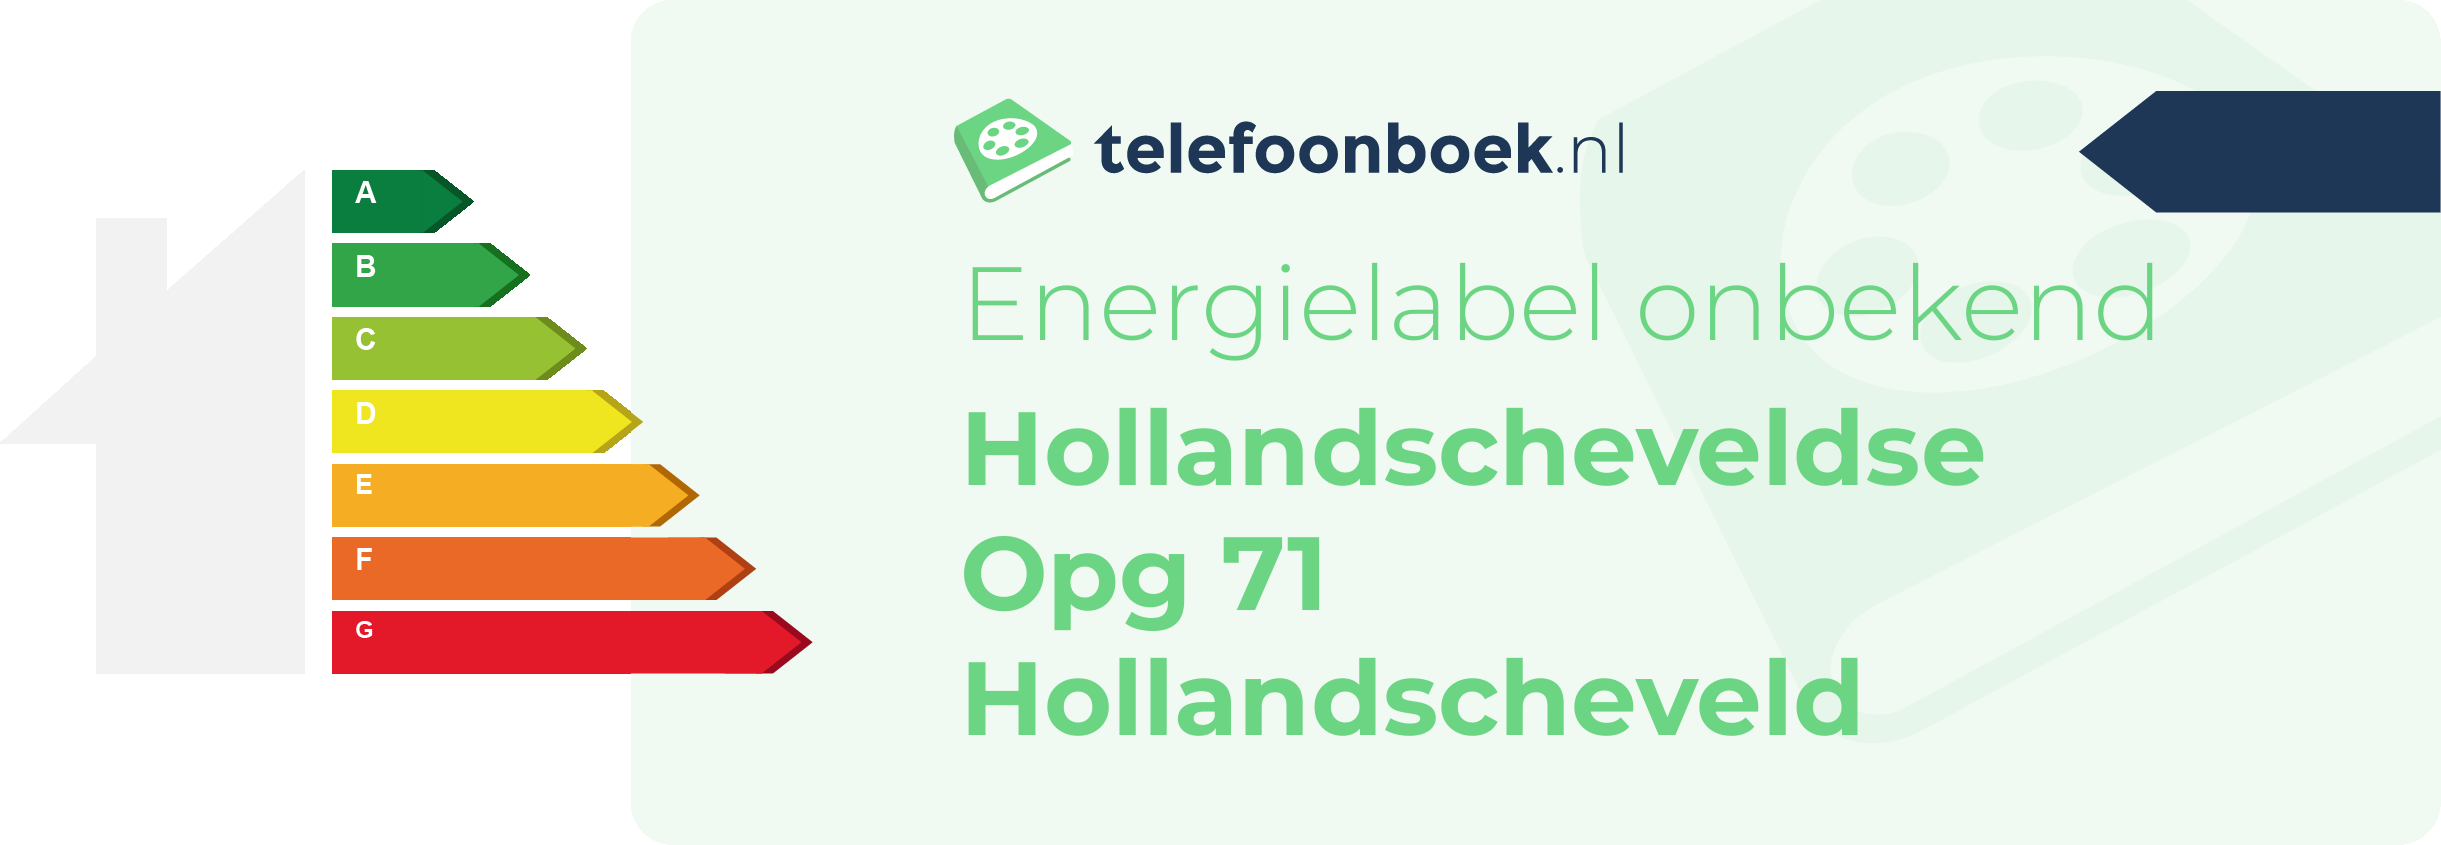 Energielabel Hollandscheveldse Opg 71 Hollandscheveld